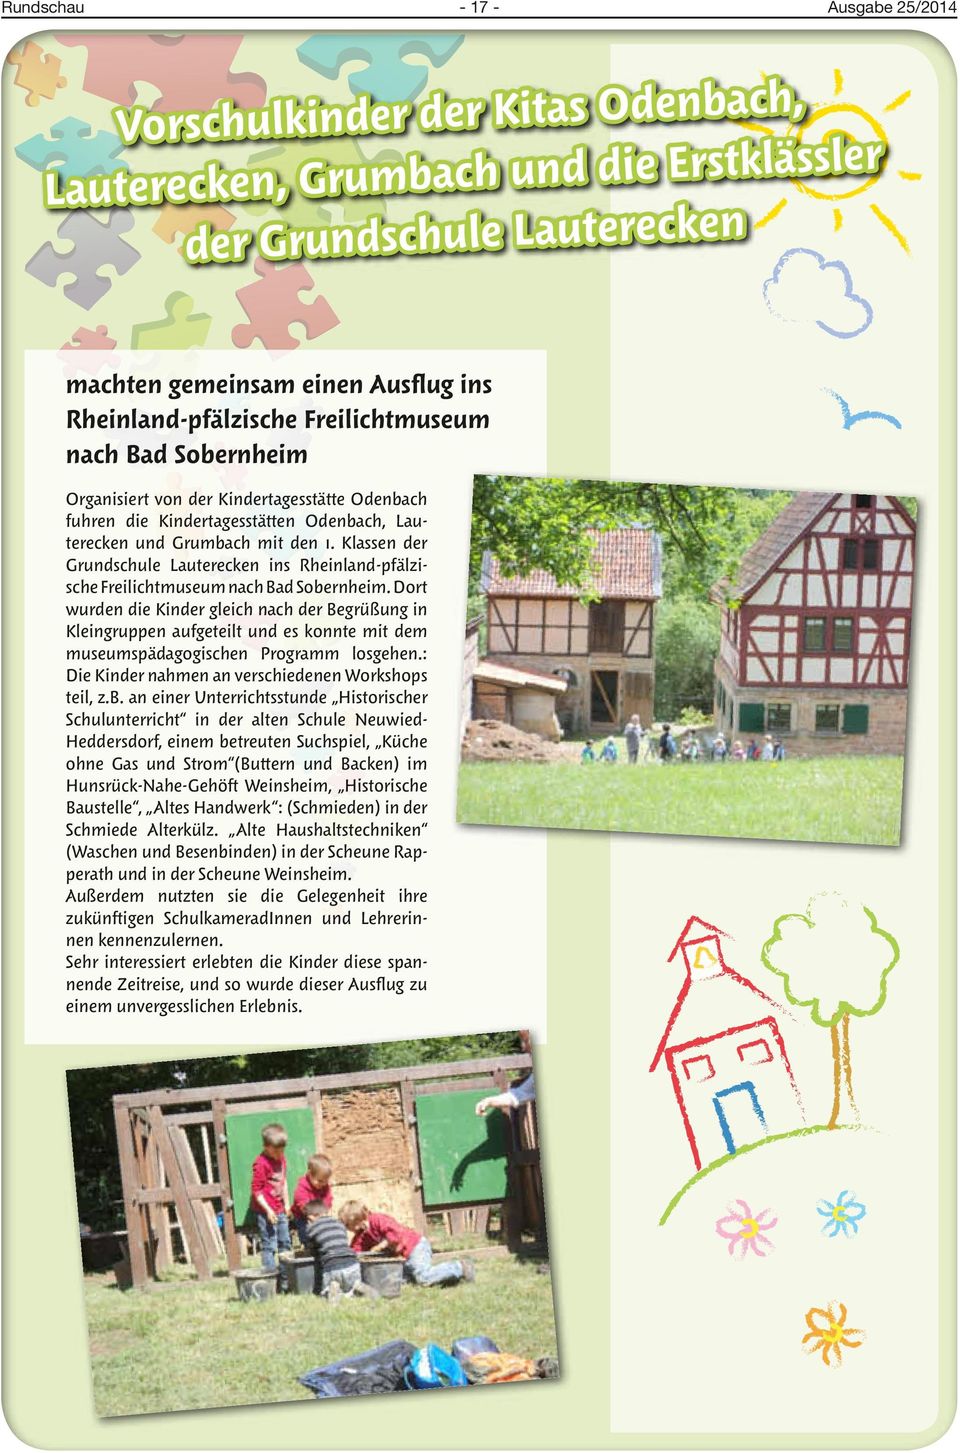 Klassen der Grundschule Lauterecken ins Rheinland-pfälzische Freilichtmuseum nach Bad Sobernheim.